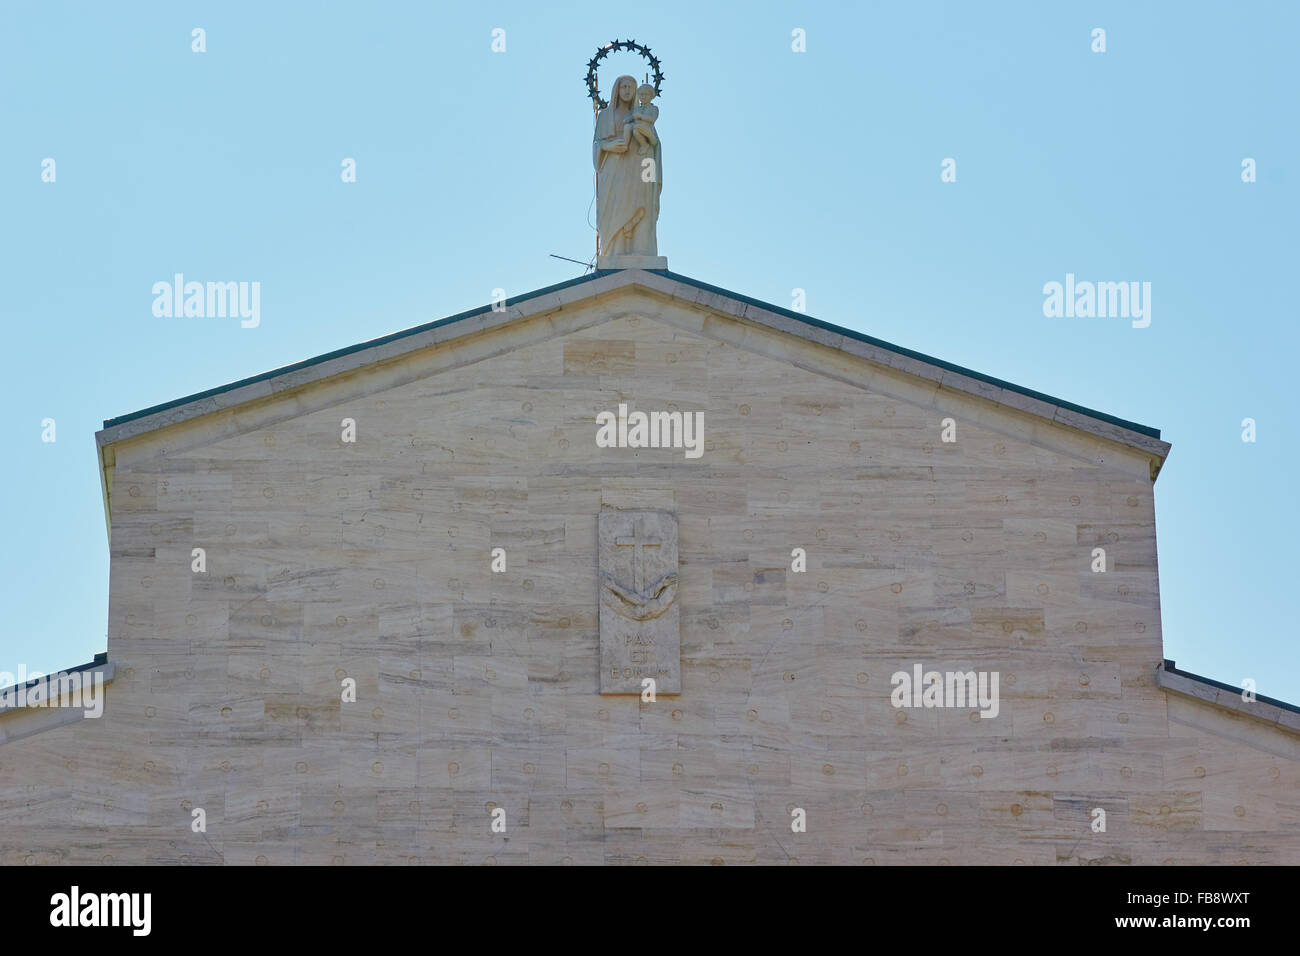 Statue de Vierge Marie et l'enfant sur le toit de l'église Santa Maria della Grazie, l'église San Giovanni Rotondo Italie Pouilles Pouilles Banque D'Images